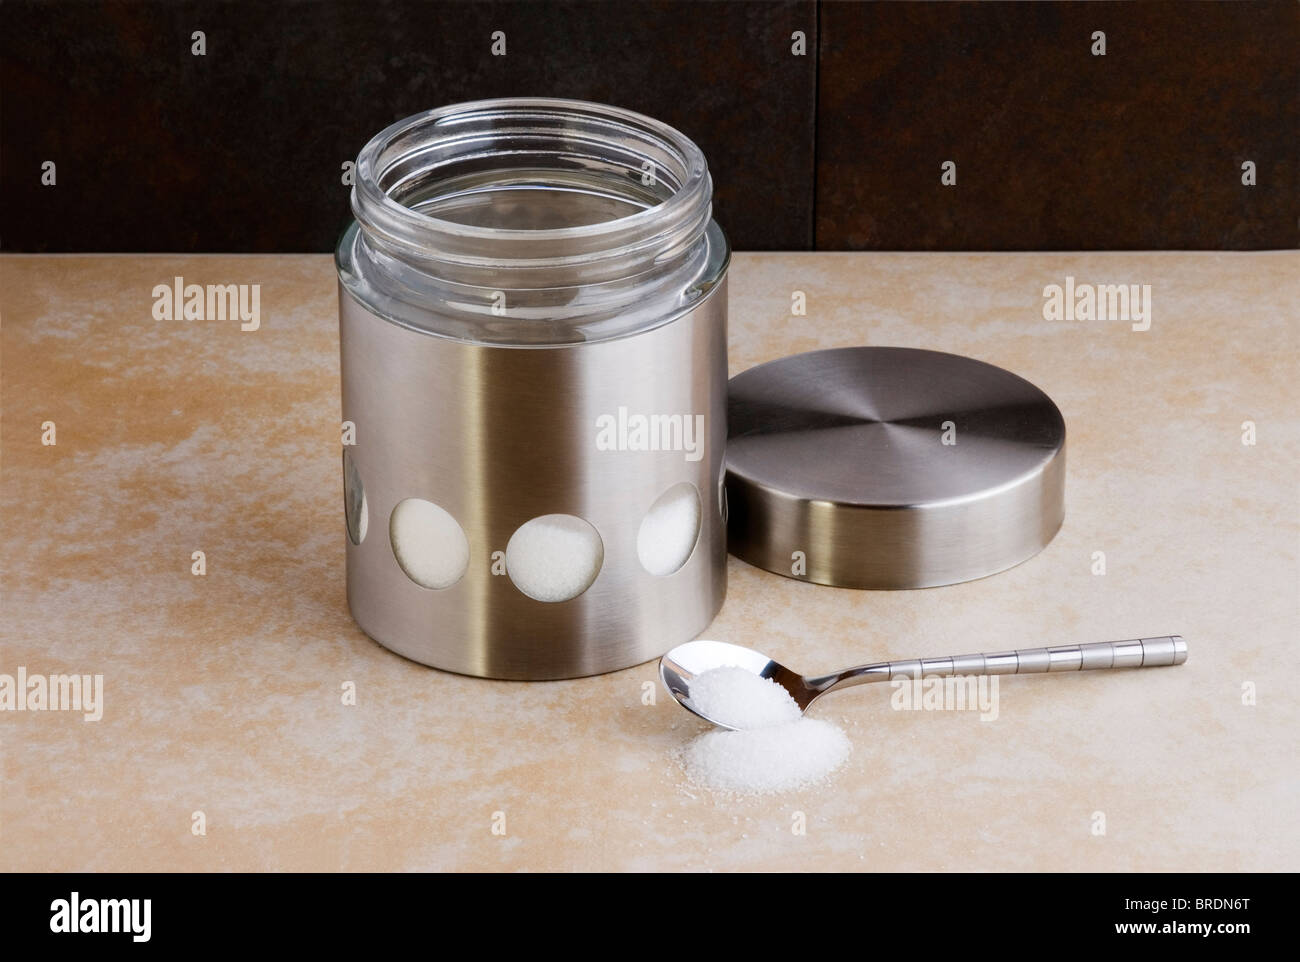 In acciaio inox e vetro barattolo di zucchero, con cucchiaino su un piano di lavoro. Foto Stock